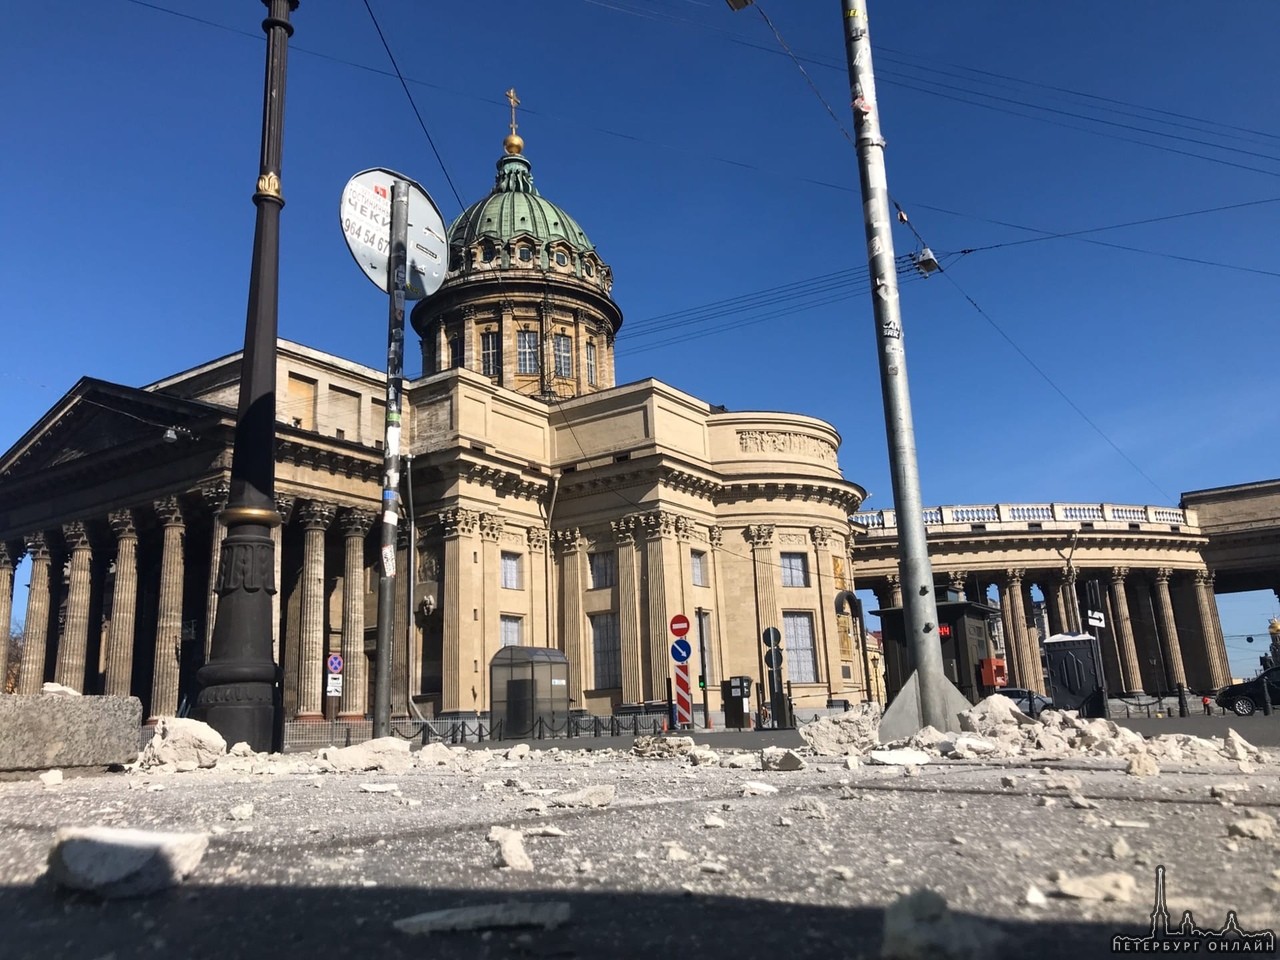 Произошло обрушение элементов фасада дома на Казанской площади.